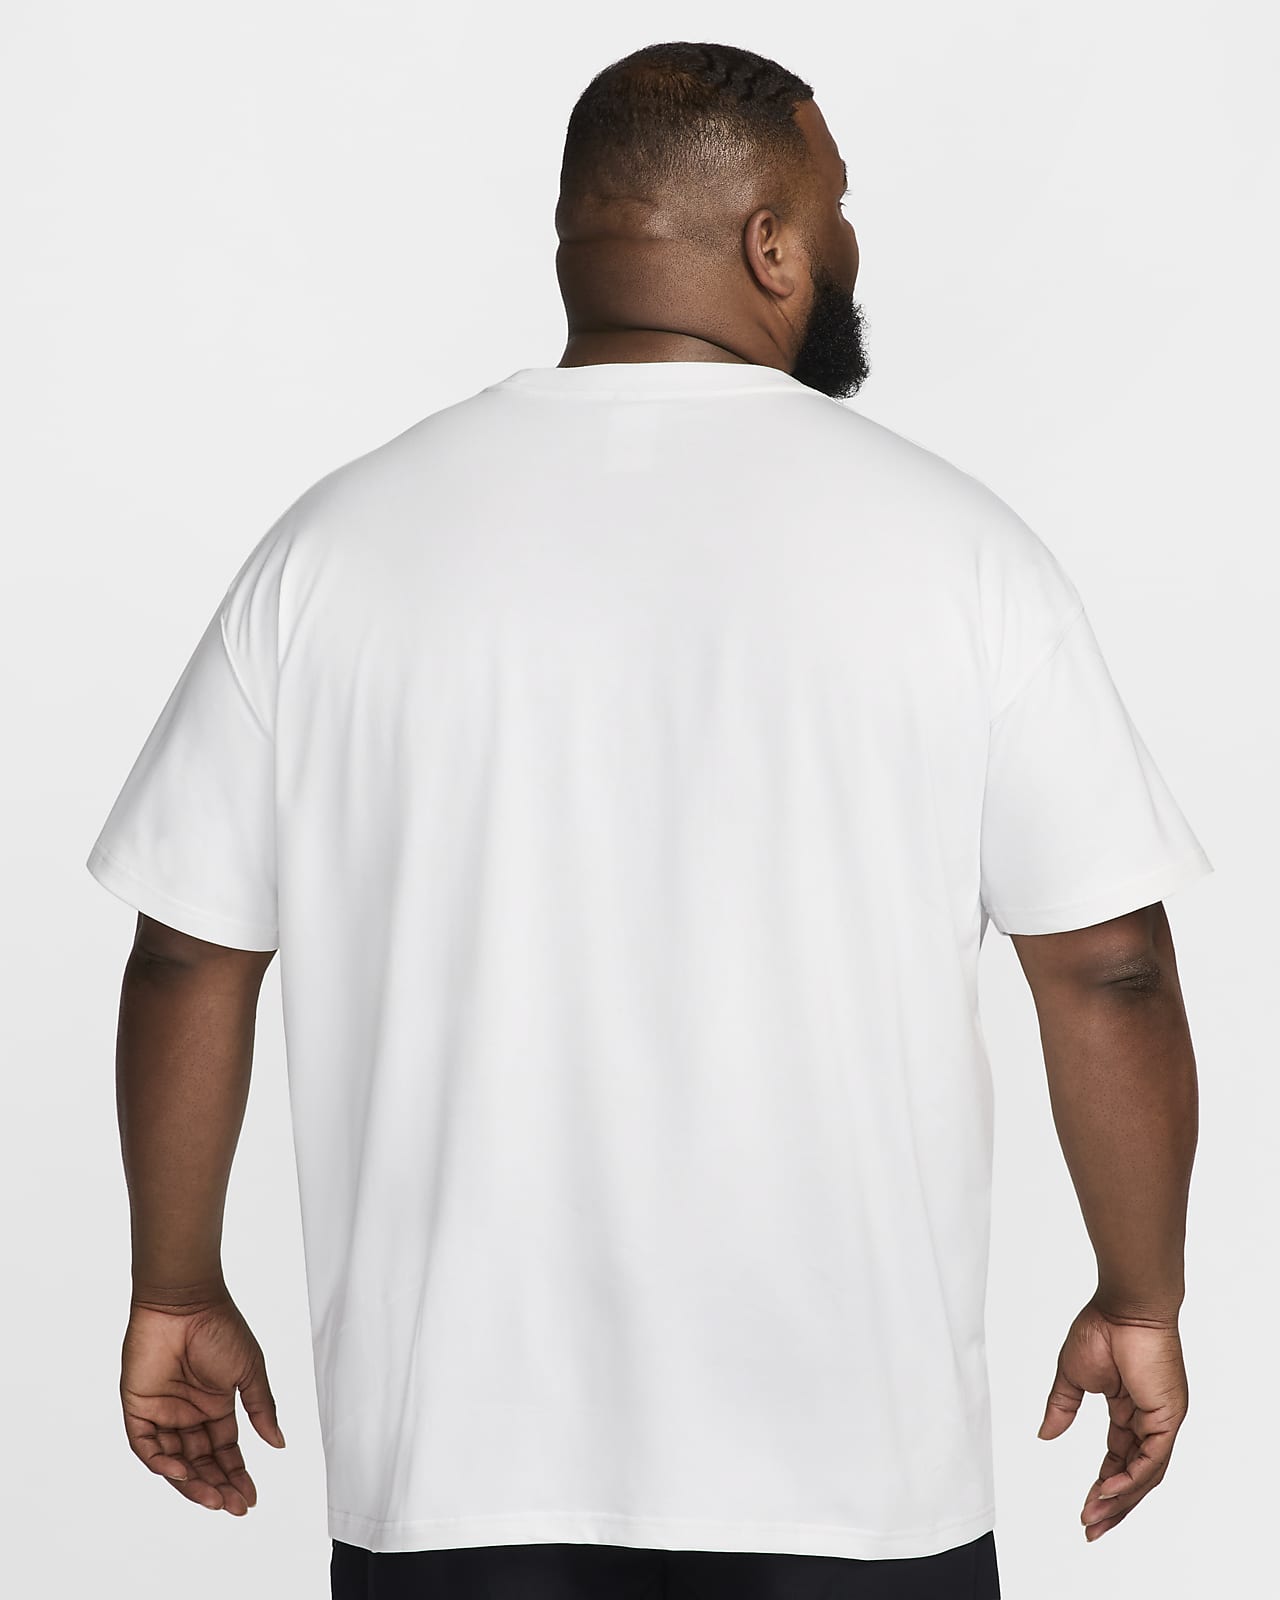 Nike ACG Men's T-Shirt. Nike NL